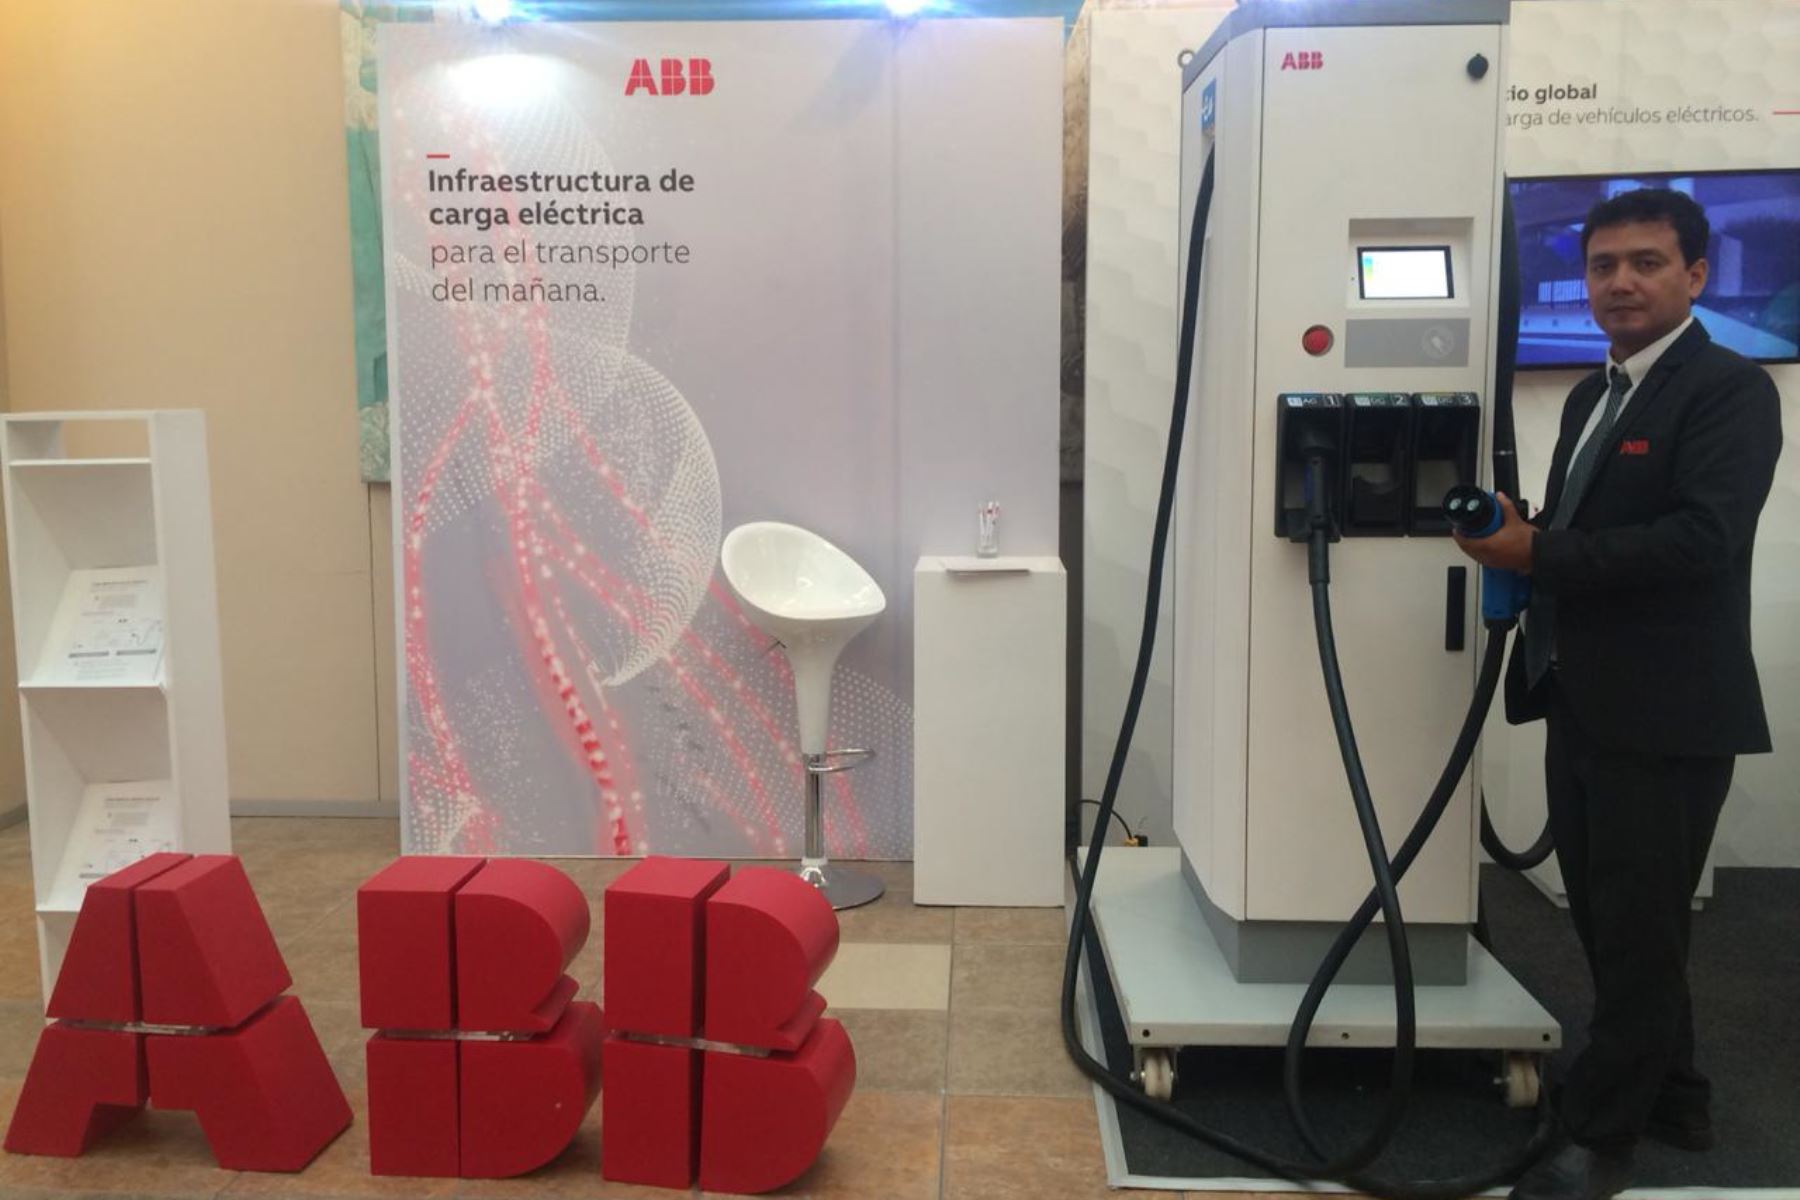 El especialista en movilidad eléctrica de ABB en el Perú Edwin Zorrilla presentó en la ciudad de Arequipa el primer cargador rápido "electrolinera" para vehículos eléctricos.